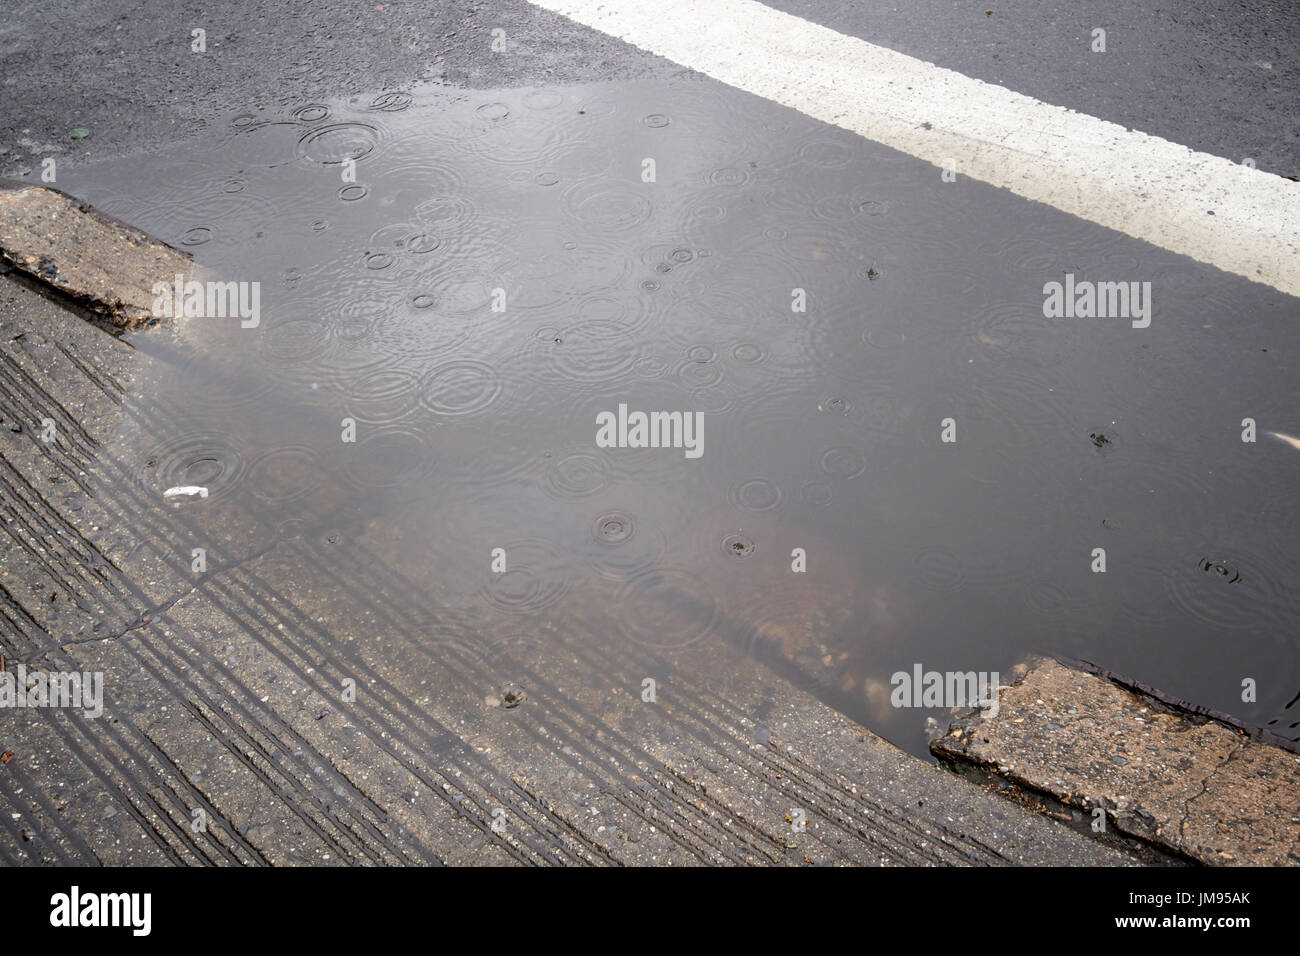 El agua de lluvia a partir de inundación en las calles de la ciudad de Nueva York EE.UU. Foto de stock